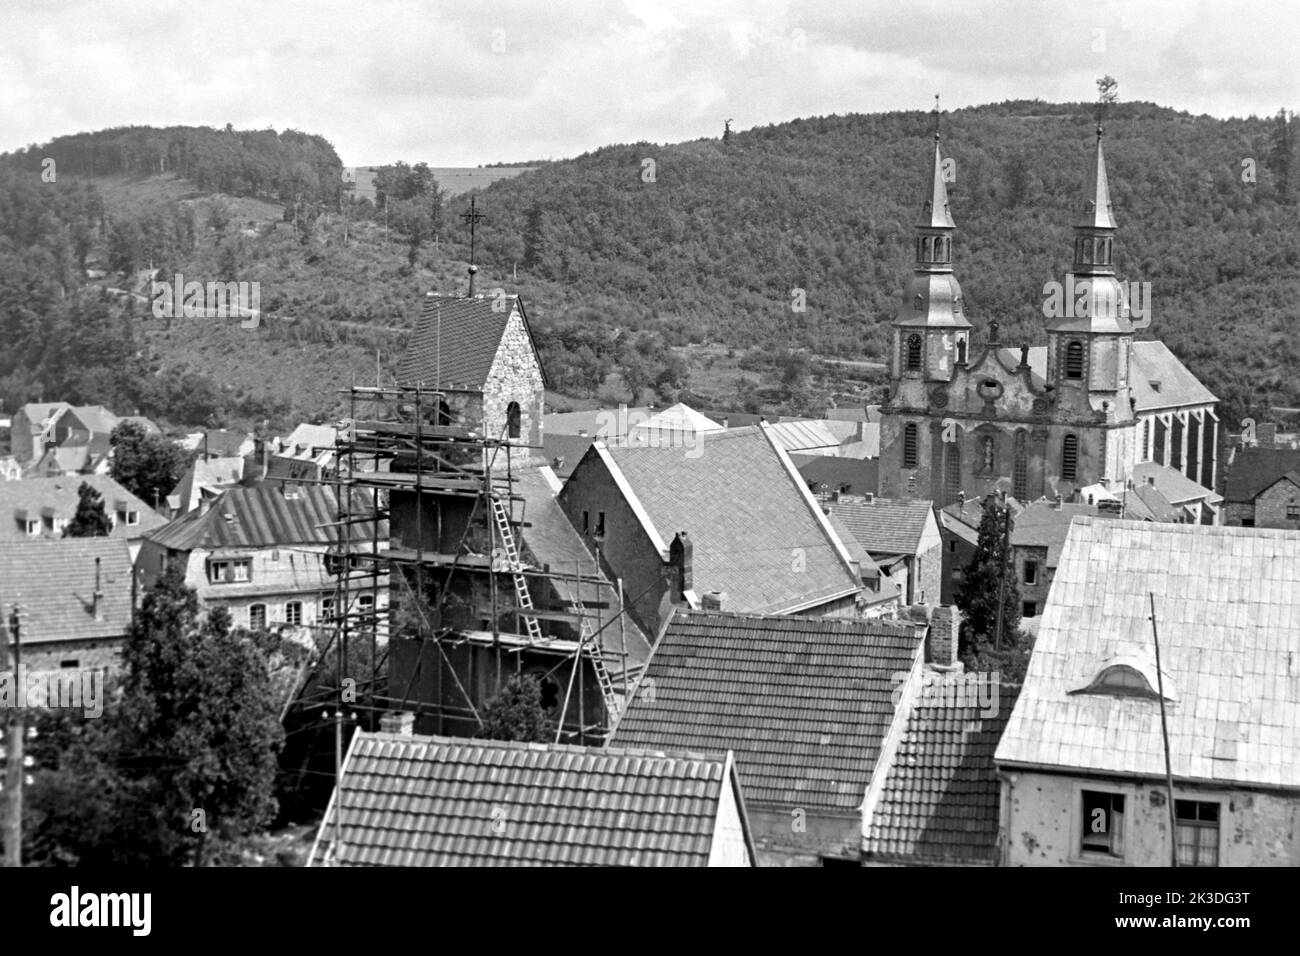 Blick auf die Basilika Sankt Salvator in Prüm in der Eifel, circa 1952. View of the Basilica of the Transformation of Our Lord, aka Prüm Basilica, in Prüm, Eifel region, around 1952. Stock Photo